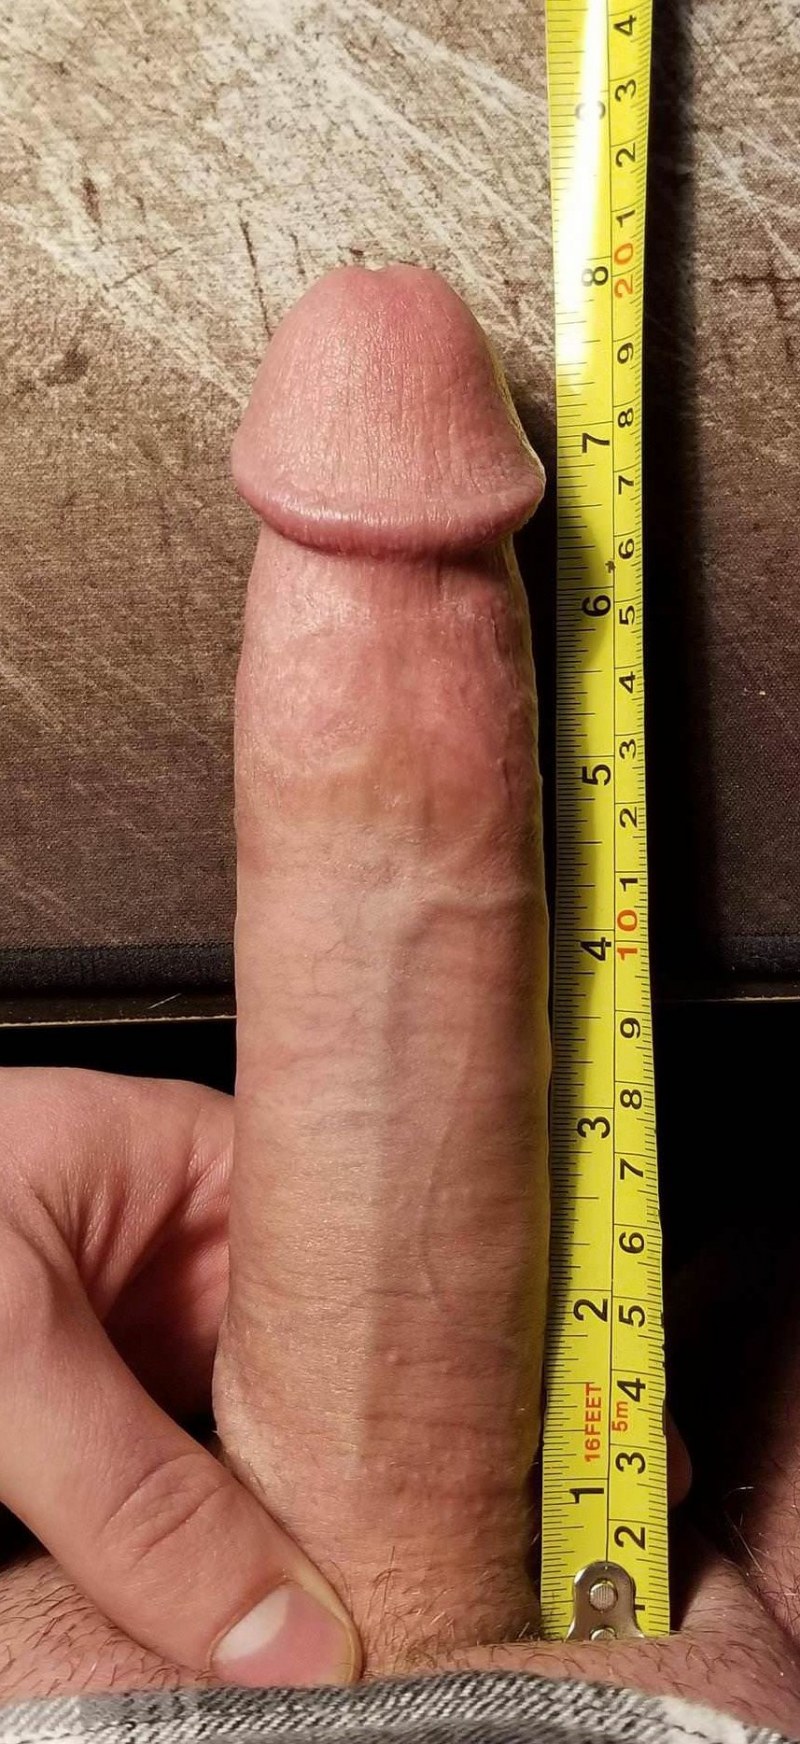 6 inch dick fun